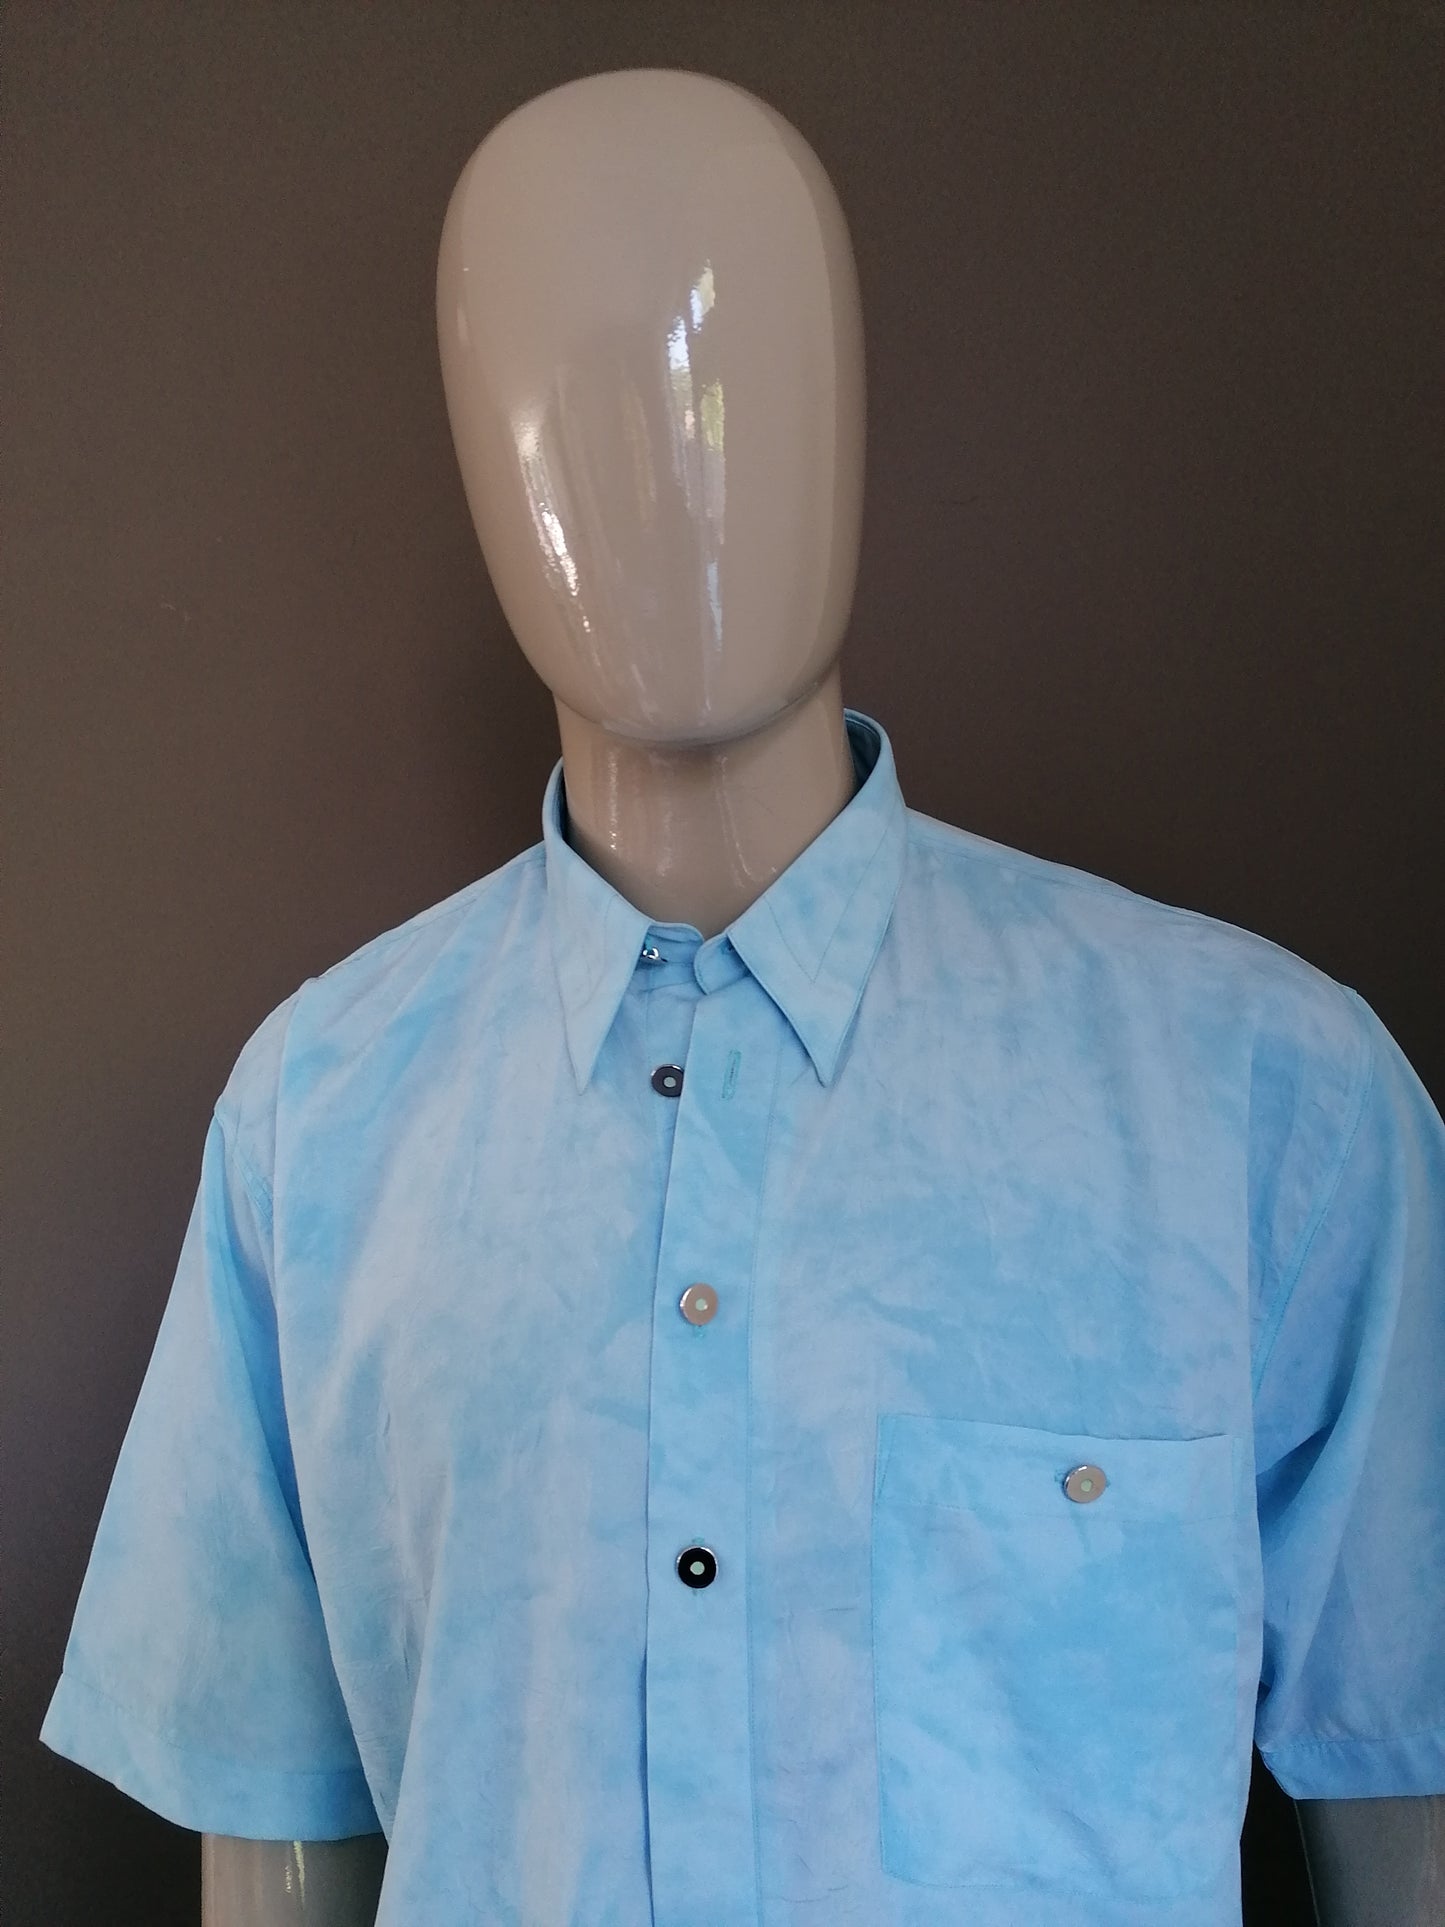 Camisa de manga corta luncina vintage. Azul claro coloreado con efecto arrugas. Tamaño XL